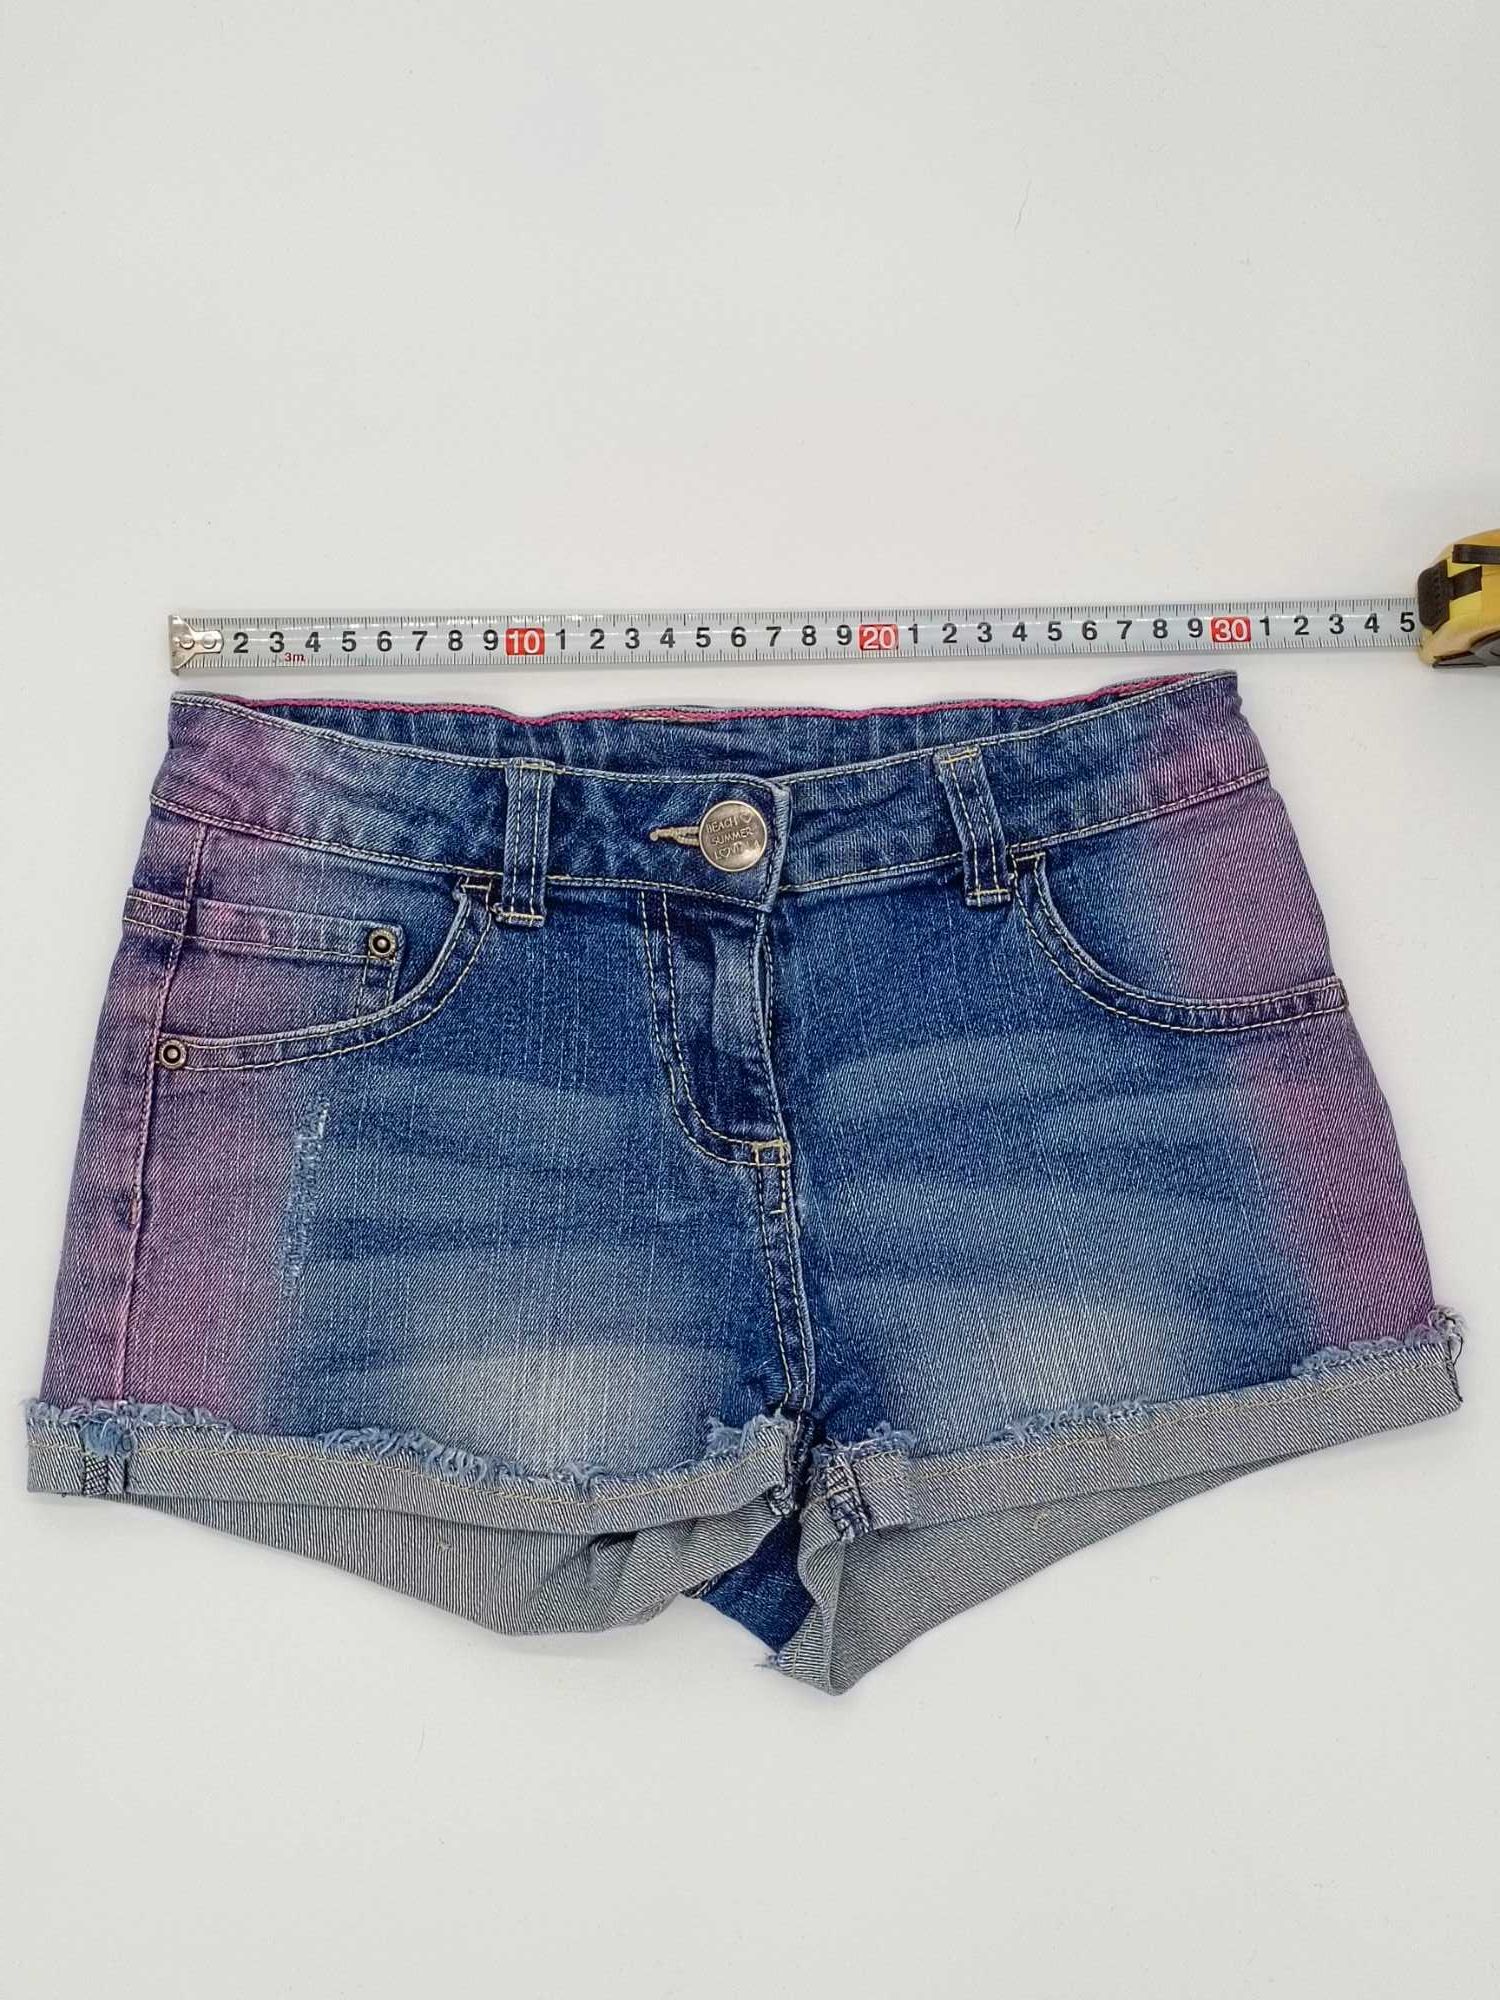 Szorty Pepperts krótkie spodenki jeans shorts dziewczęce 140cm